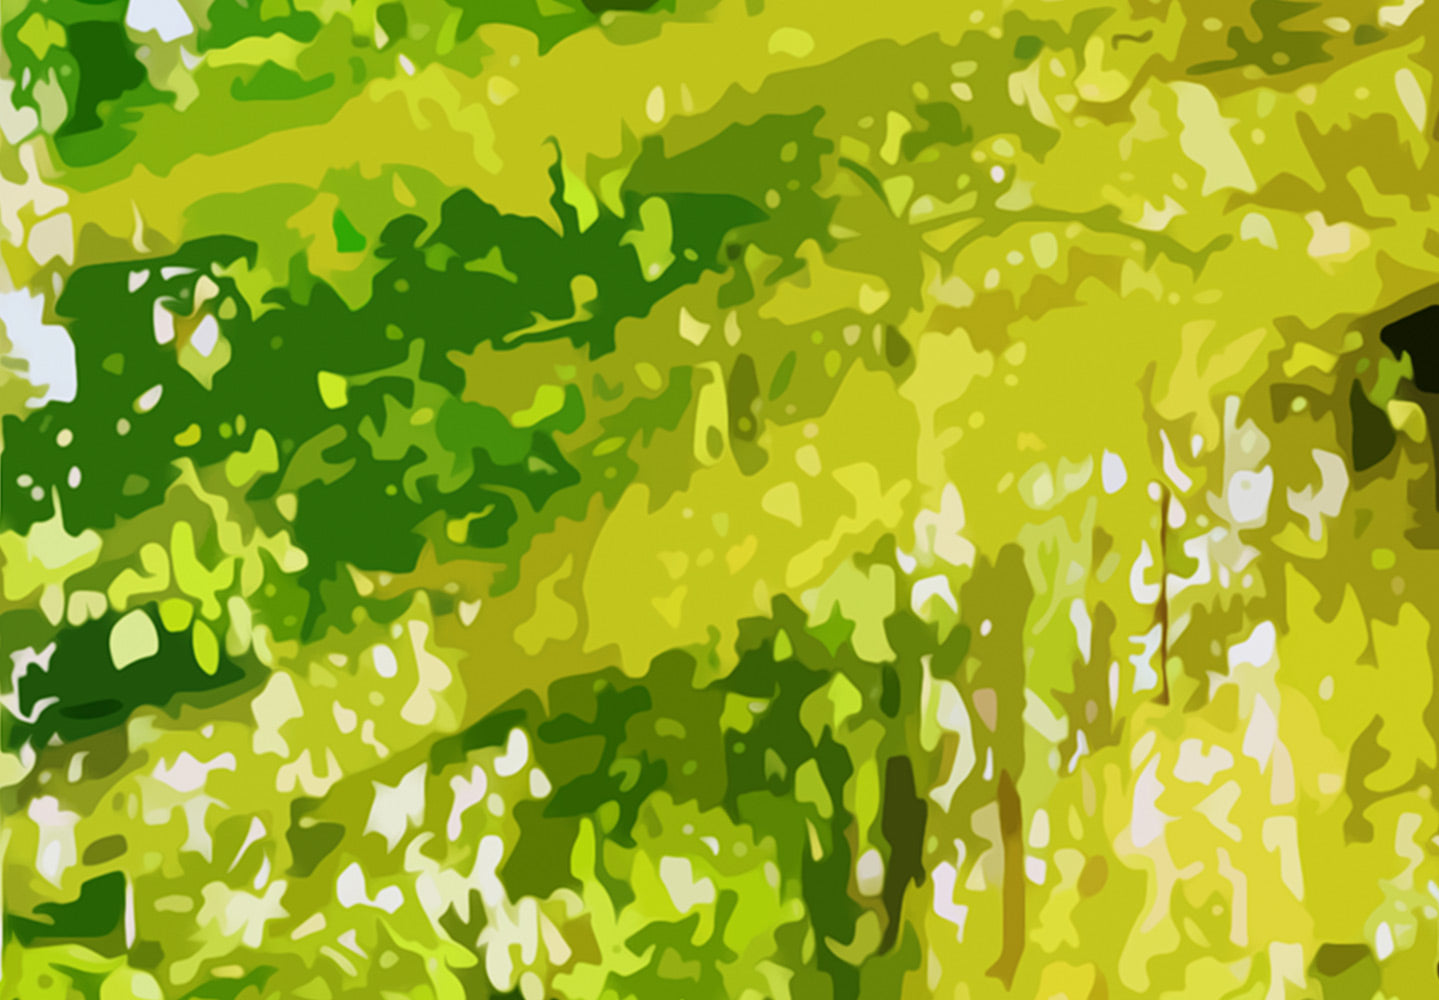 Stretched Canvas Landscape Art - Forest Footbridge 5 Piece